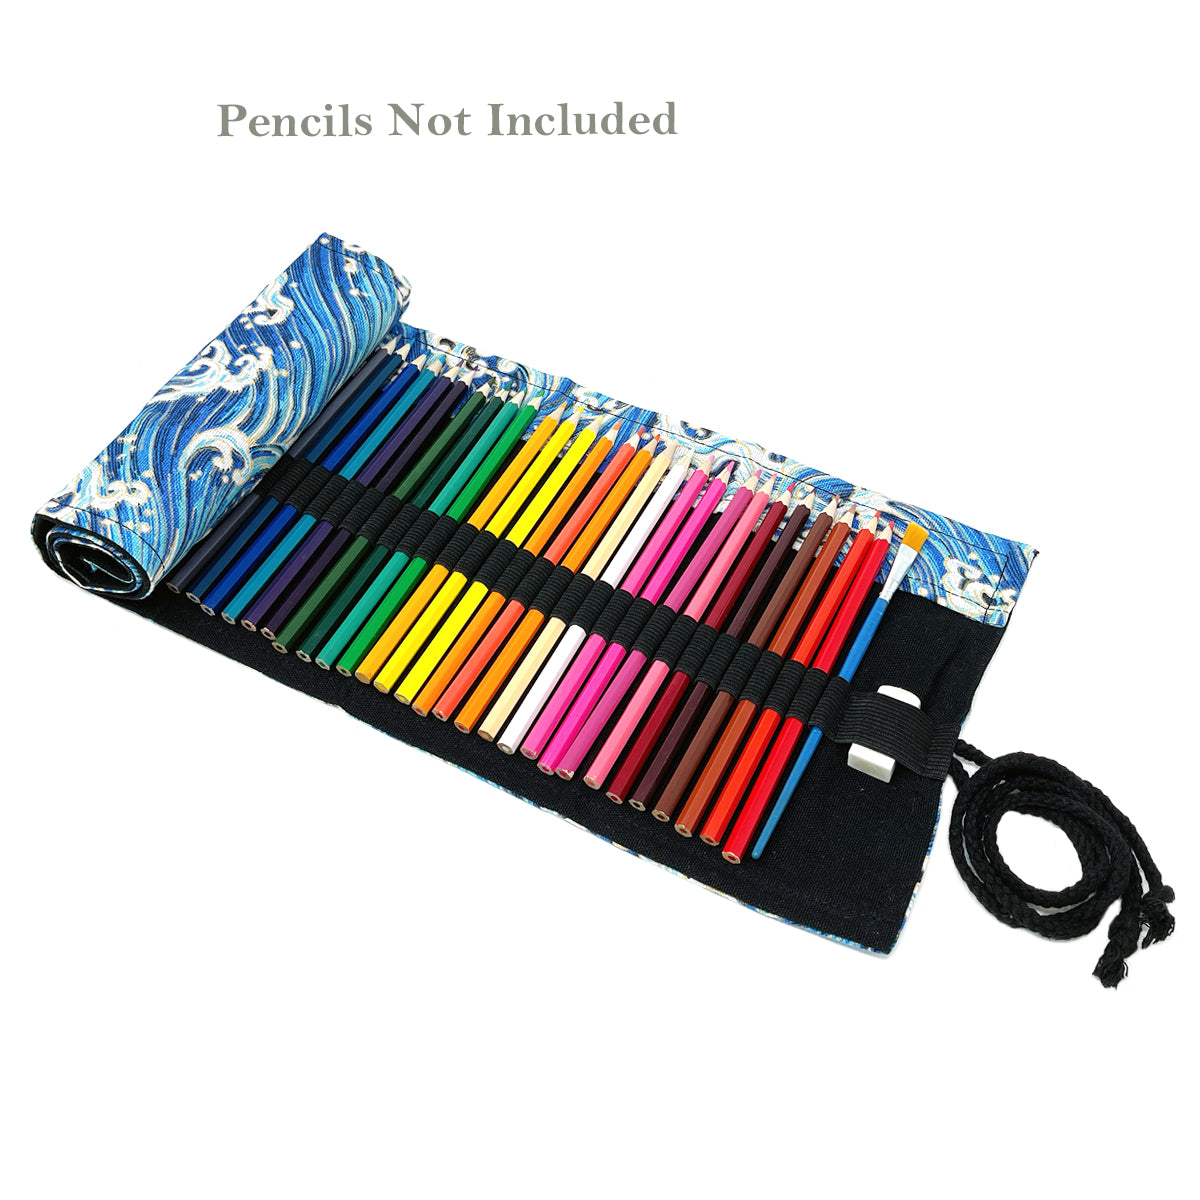  Operitacx 3pcs 72 Colored Pencil Wrap Pen Pencil Pouch